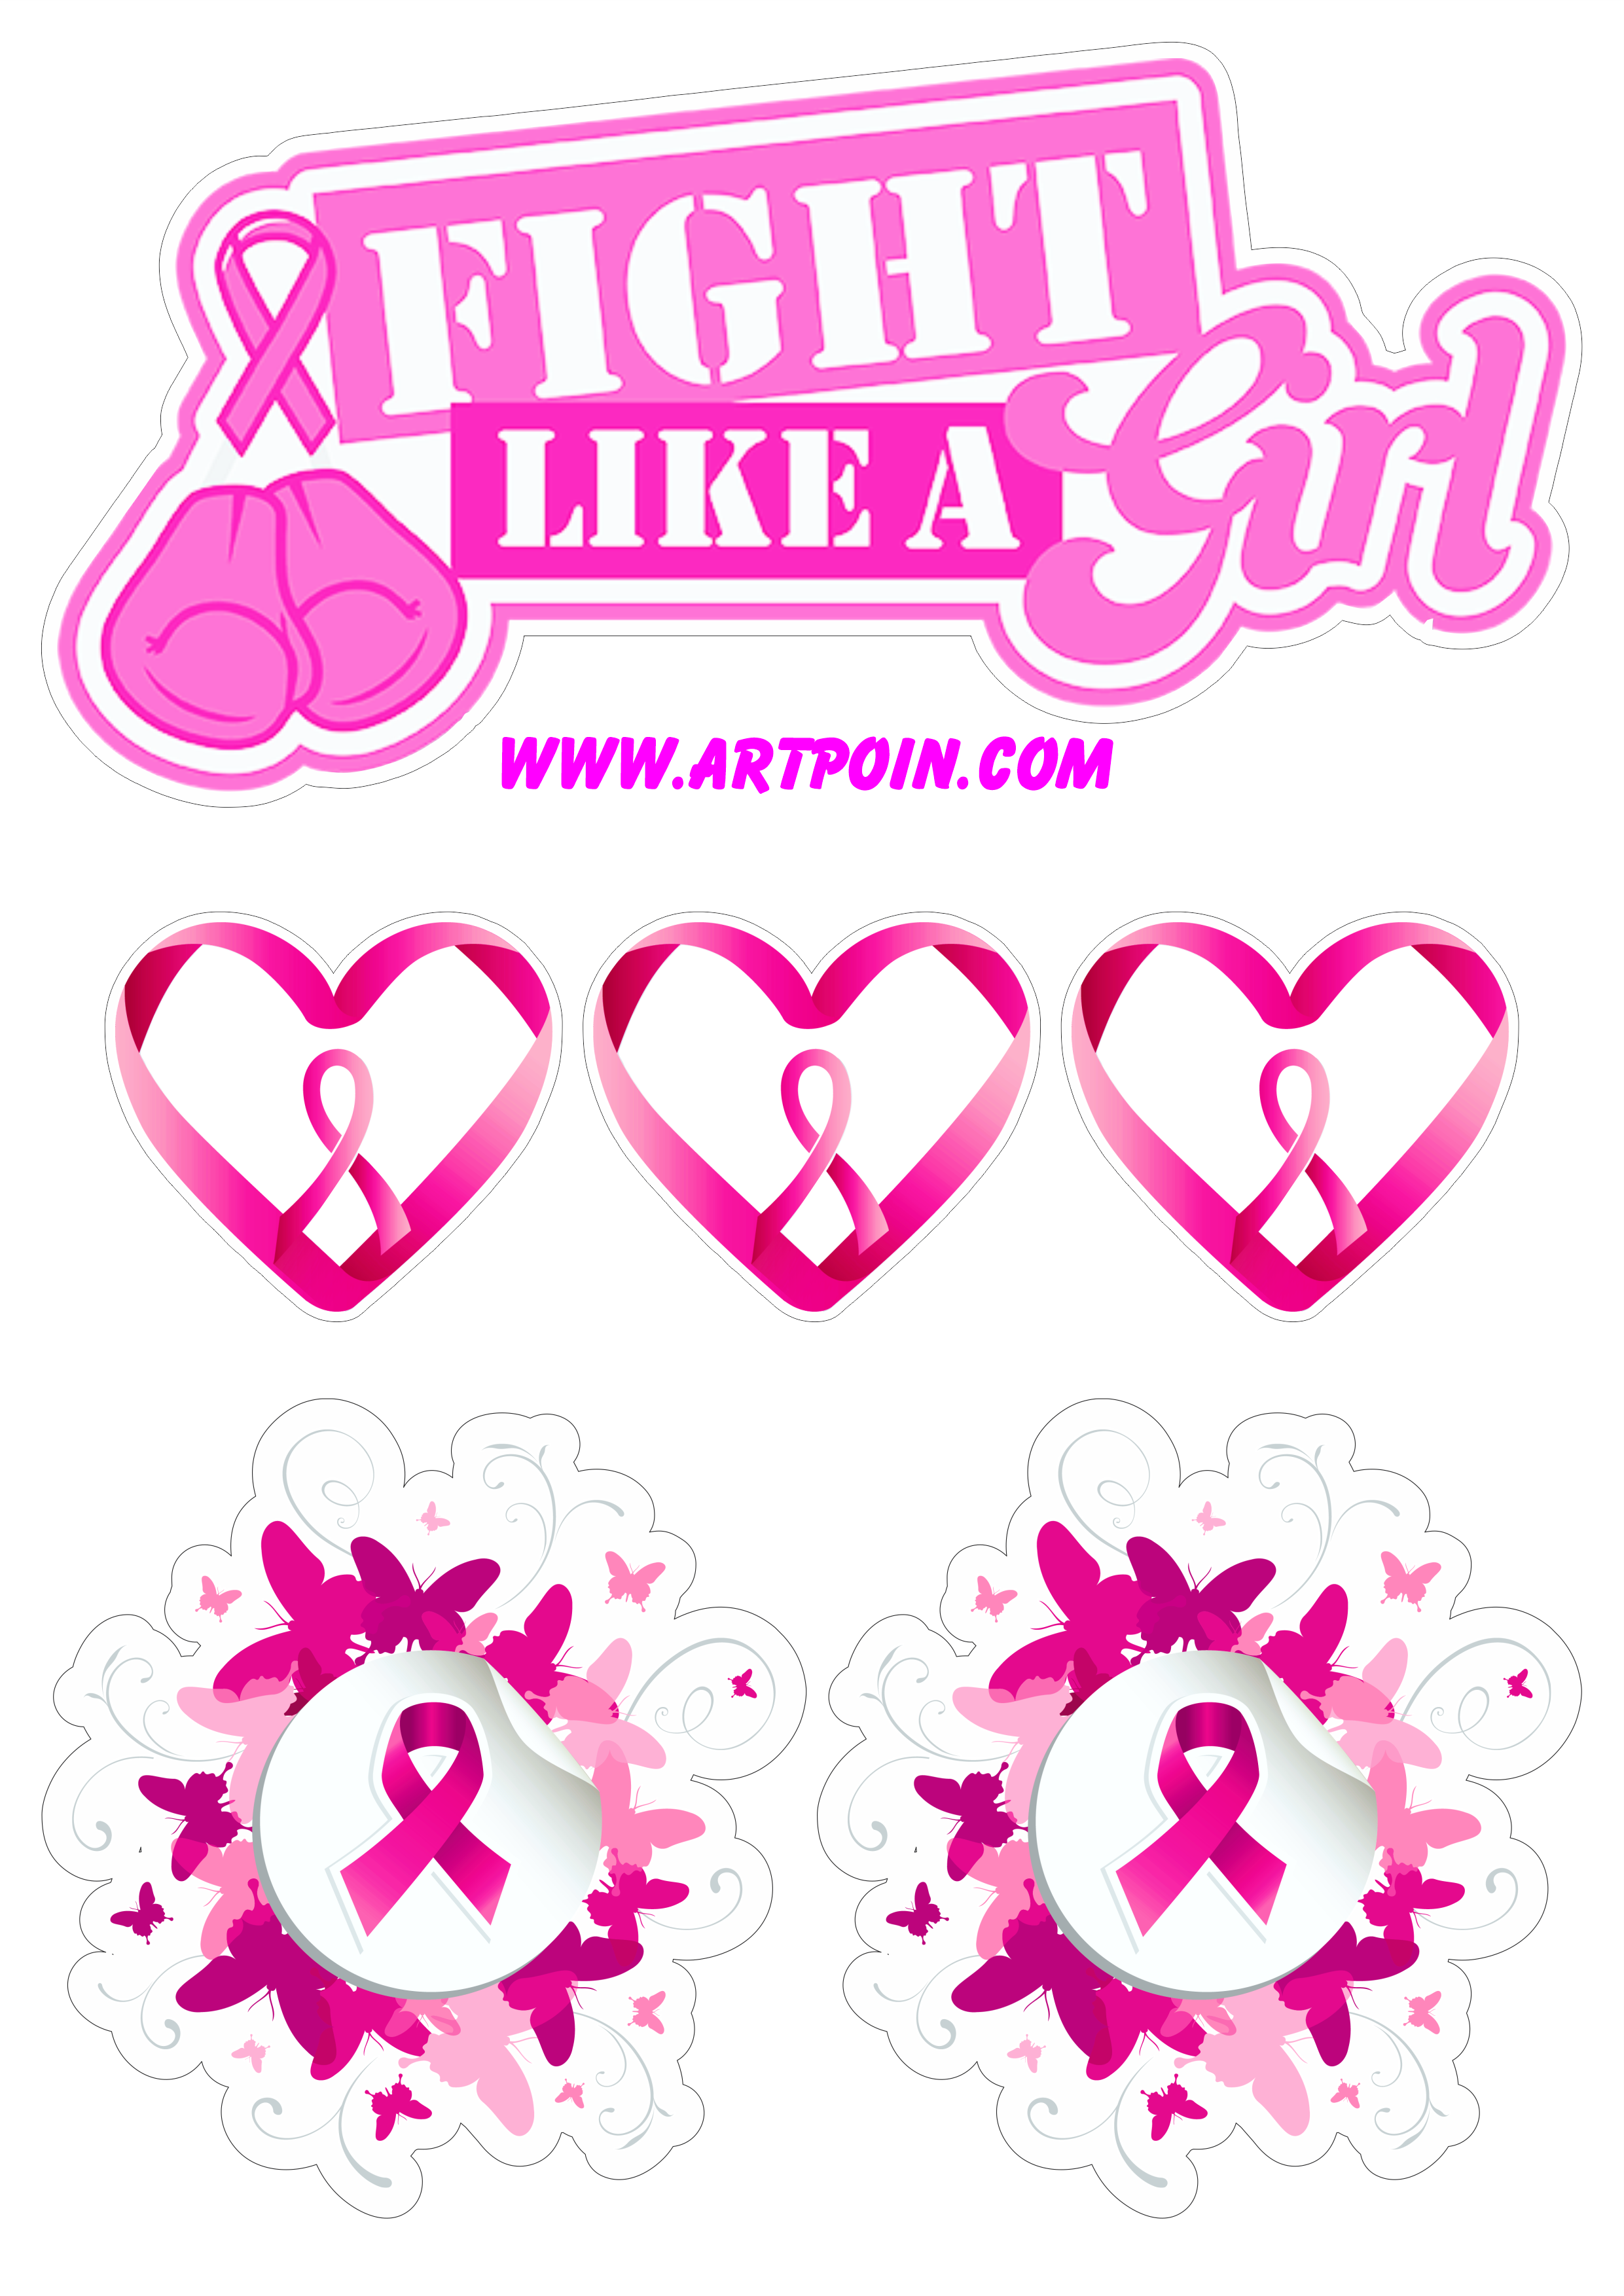 Outubro rosa fight like a girl topo de bolo para imprimir campanha de conscientização ao câncer de mama png